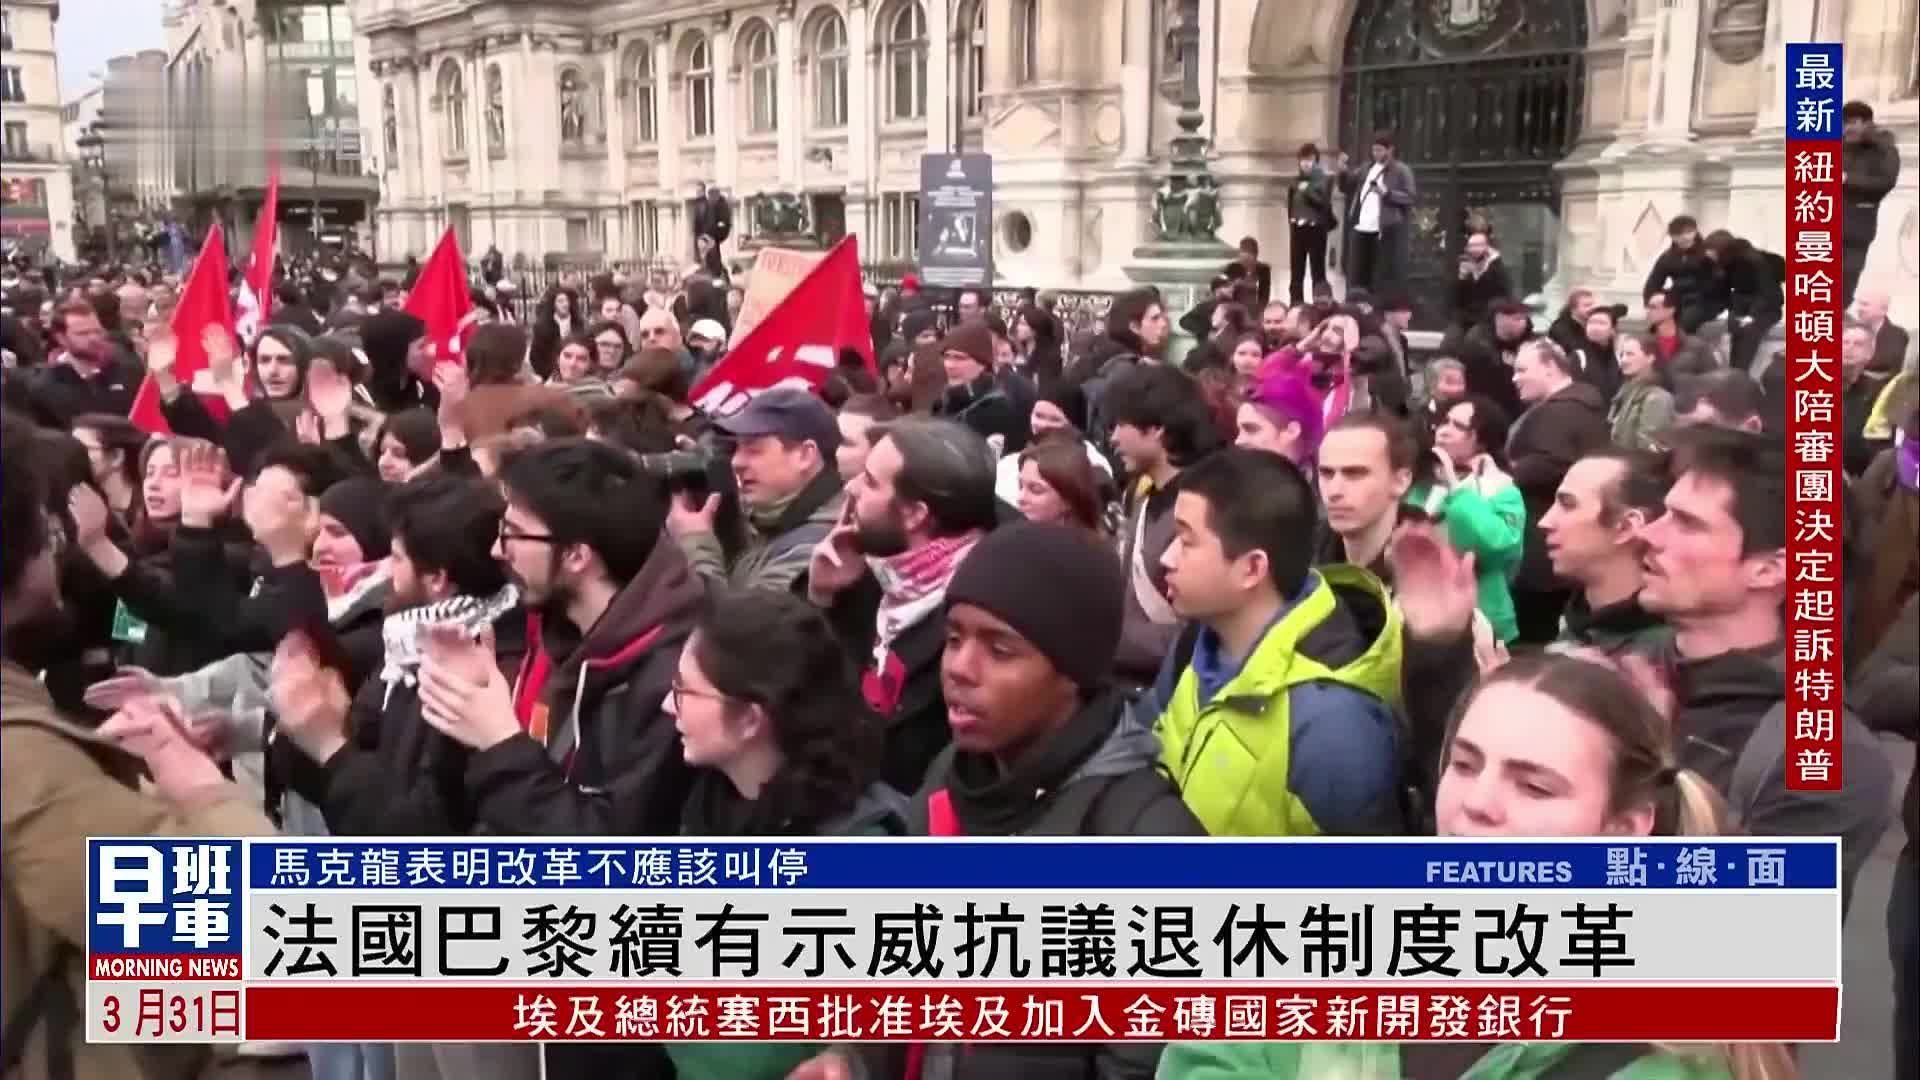 法国抗议活动演变成暴力冲突 “马克龙处境艰险”-搜狐大视野-搜狐新闻